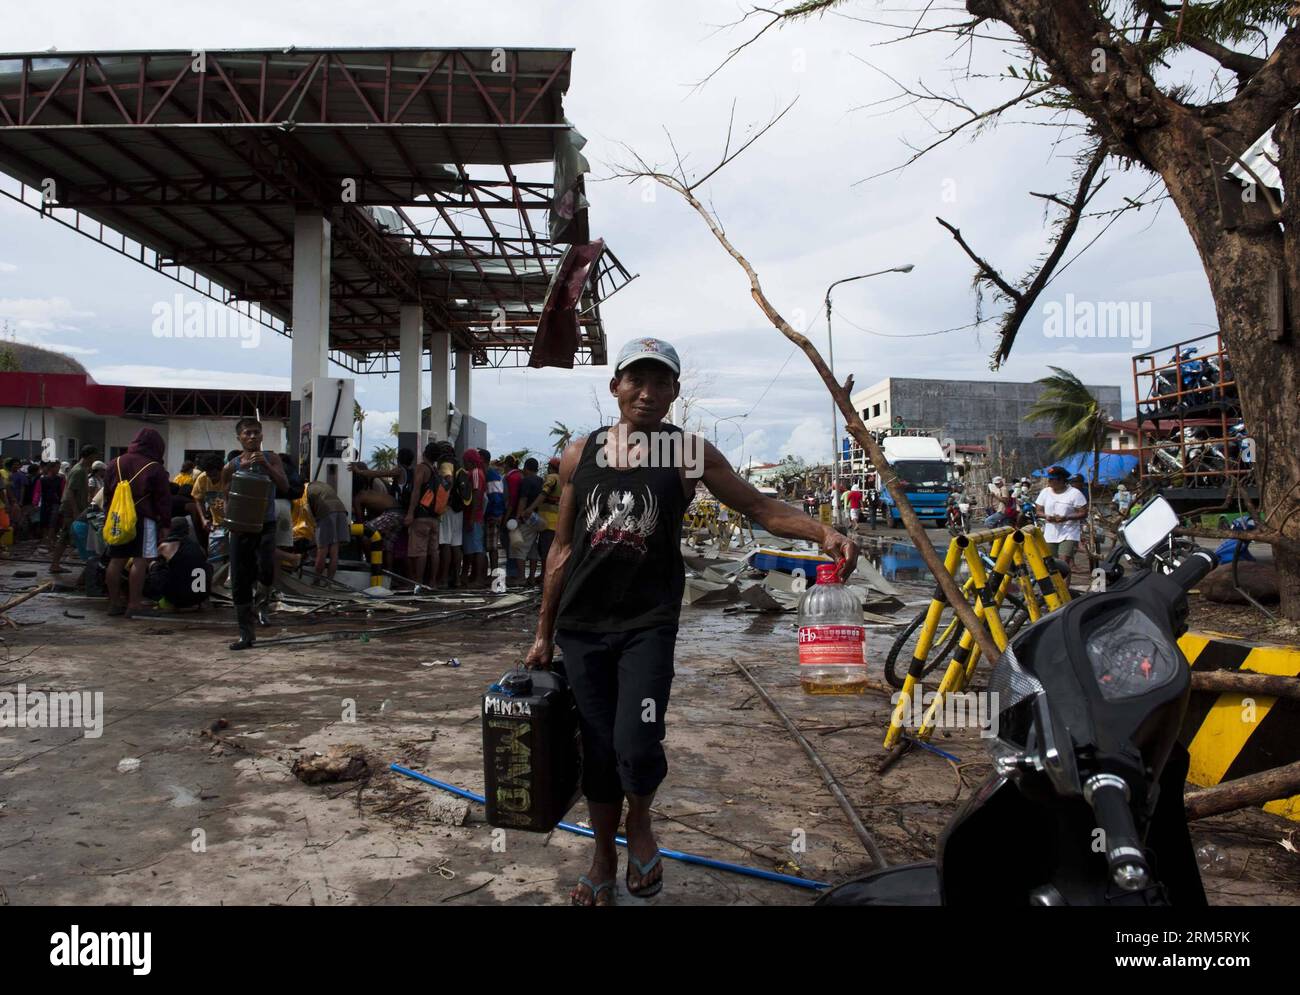 Bildnummer : 60711662 Datum : 13.11.2013 Copyright : imago/Xinhua (131113) -- TACLOBAN, 13 novembre 2013 (Xinhua) -- des résidents collectent du gaz dans une station-service endommagée à Tacloban, Philippines, 13 novembre 2013. À Tacloban souffrent de la pénurie de nourriture, d'eau et d'autres moyens de subsistance après que la tempête la plus forte sur le typhon Haiyan ait détruit cette zone. (Xinhua/lui Siu Wai) (dzl) PHILIPPINES-TACLOBAN-TYPHON-PÉNURIE DE FOURNITURES PUBLICATIONxNOTxINxCHN Sturm Wetter Unwetter Naturkatastrophe Schäden Sturmschäden Taifun Plünderung plündern Benzin xas x0x 2013 quer Aufmacher premiumd 60 Banque D'Images